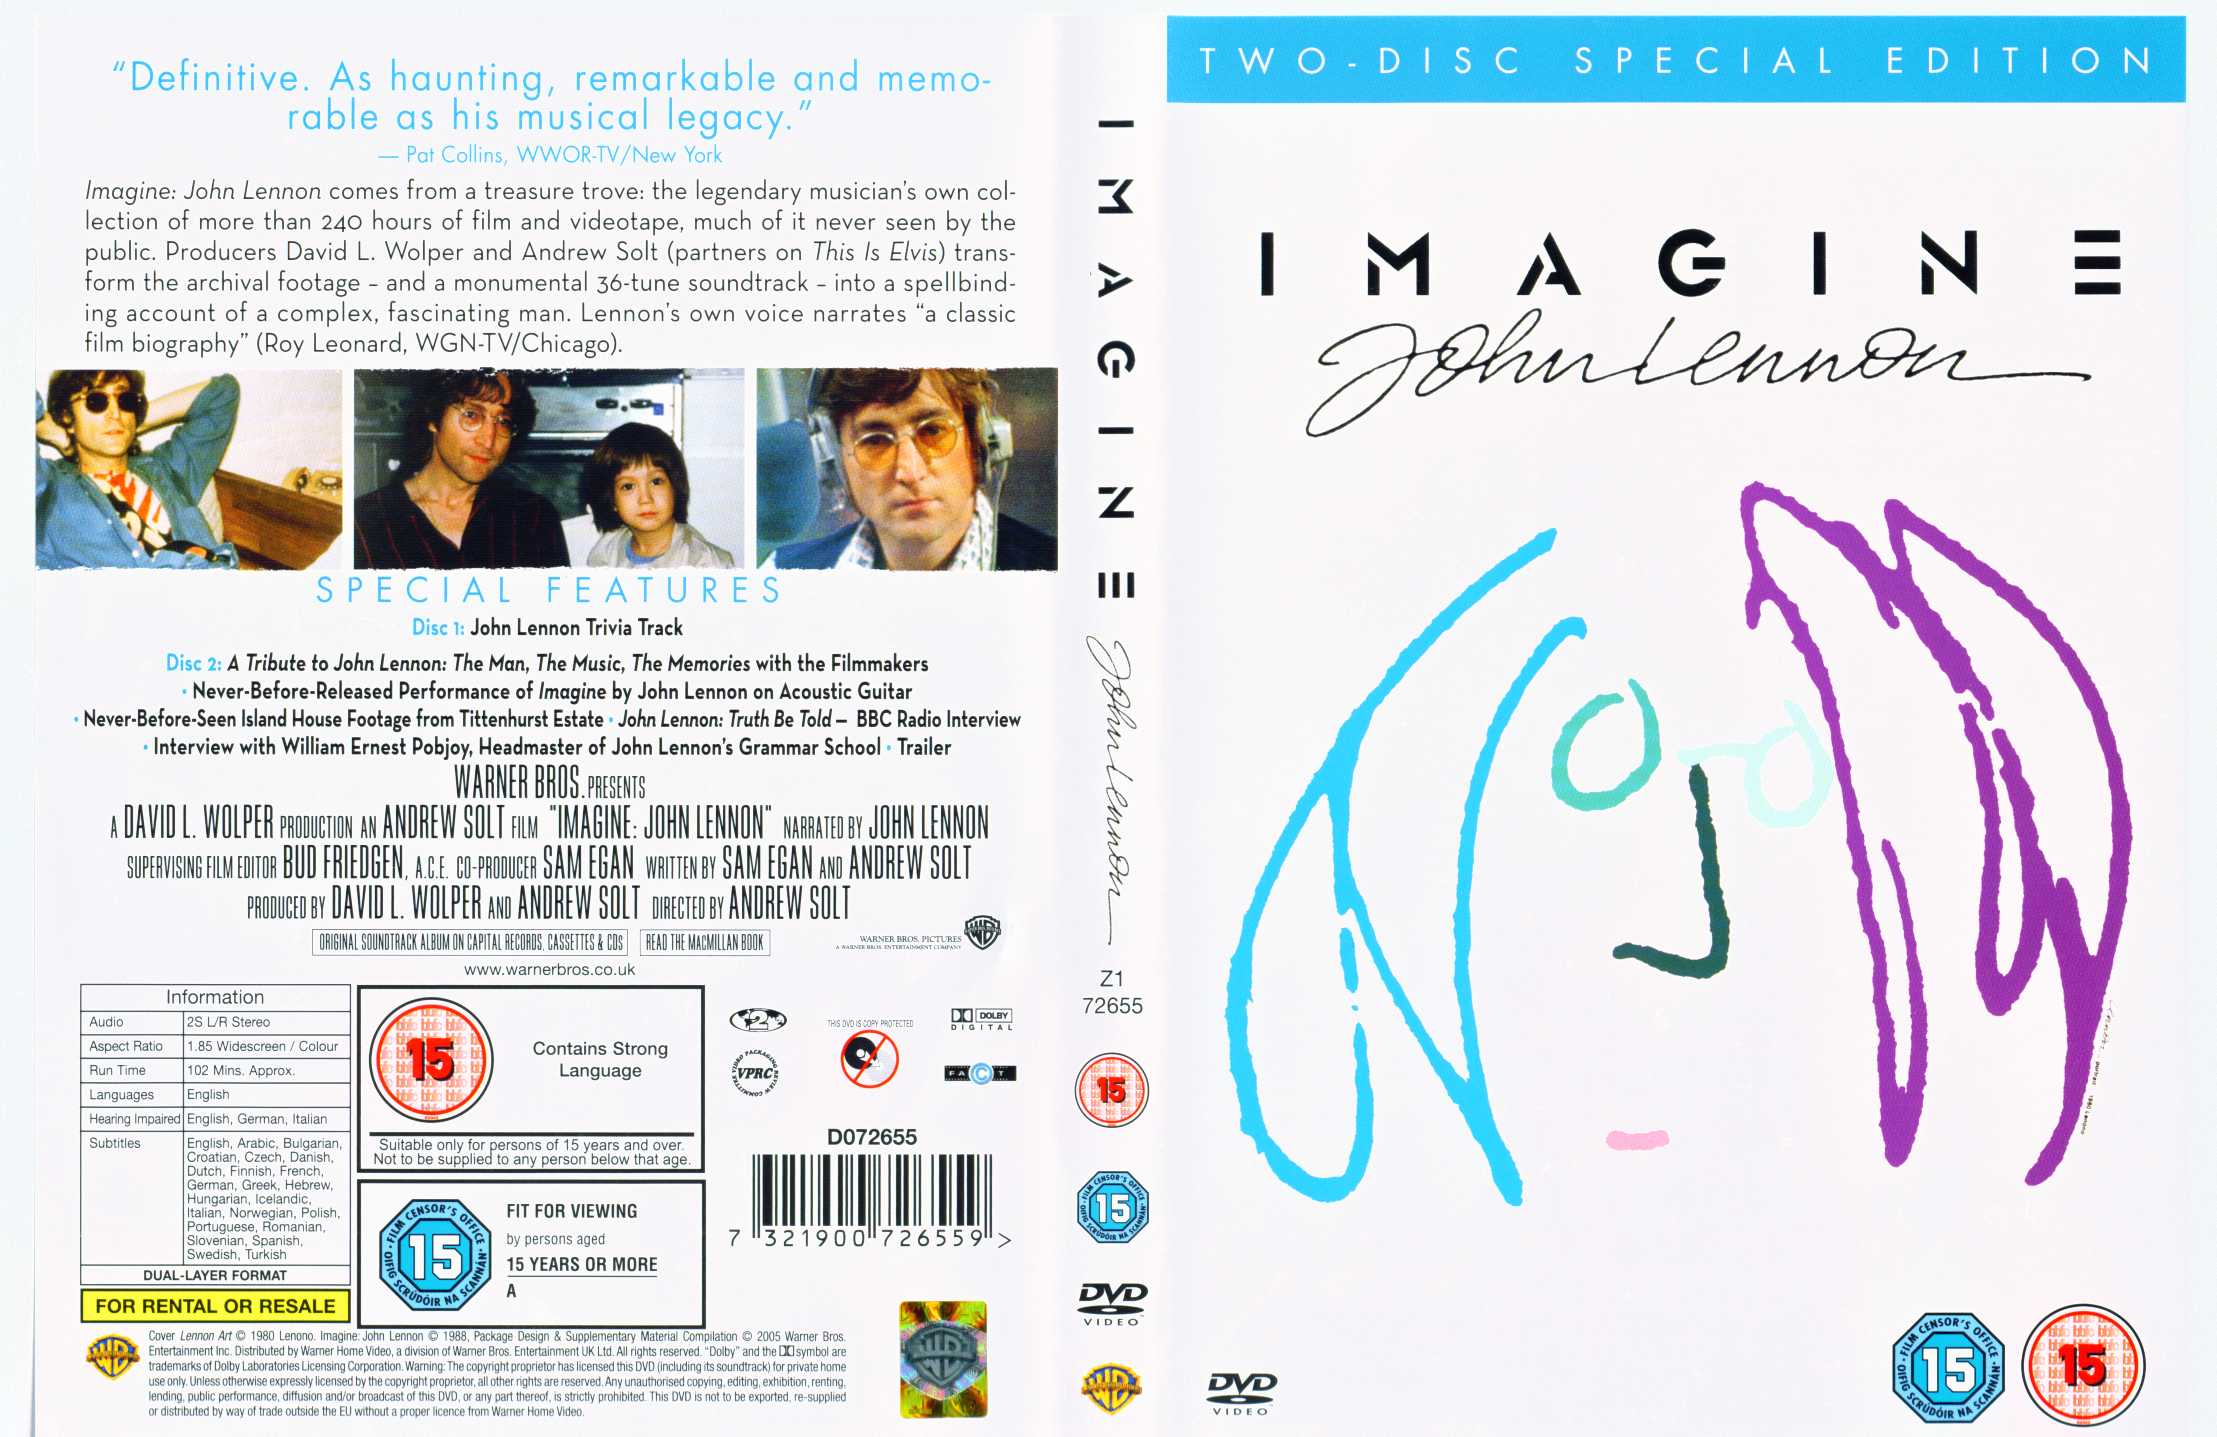 Peluquero Menstruación riega la flor John Lennon - Imagine - 2 DVD's